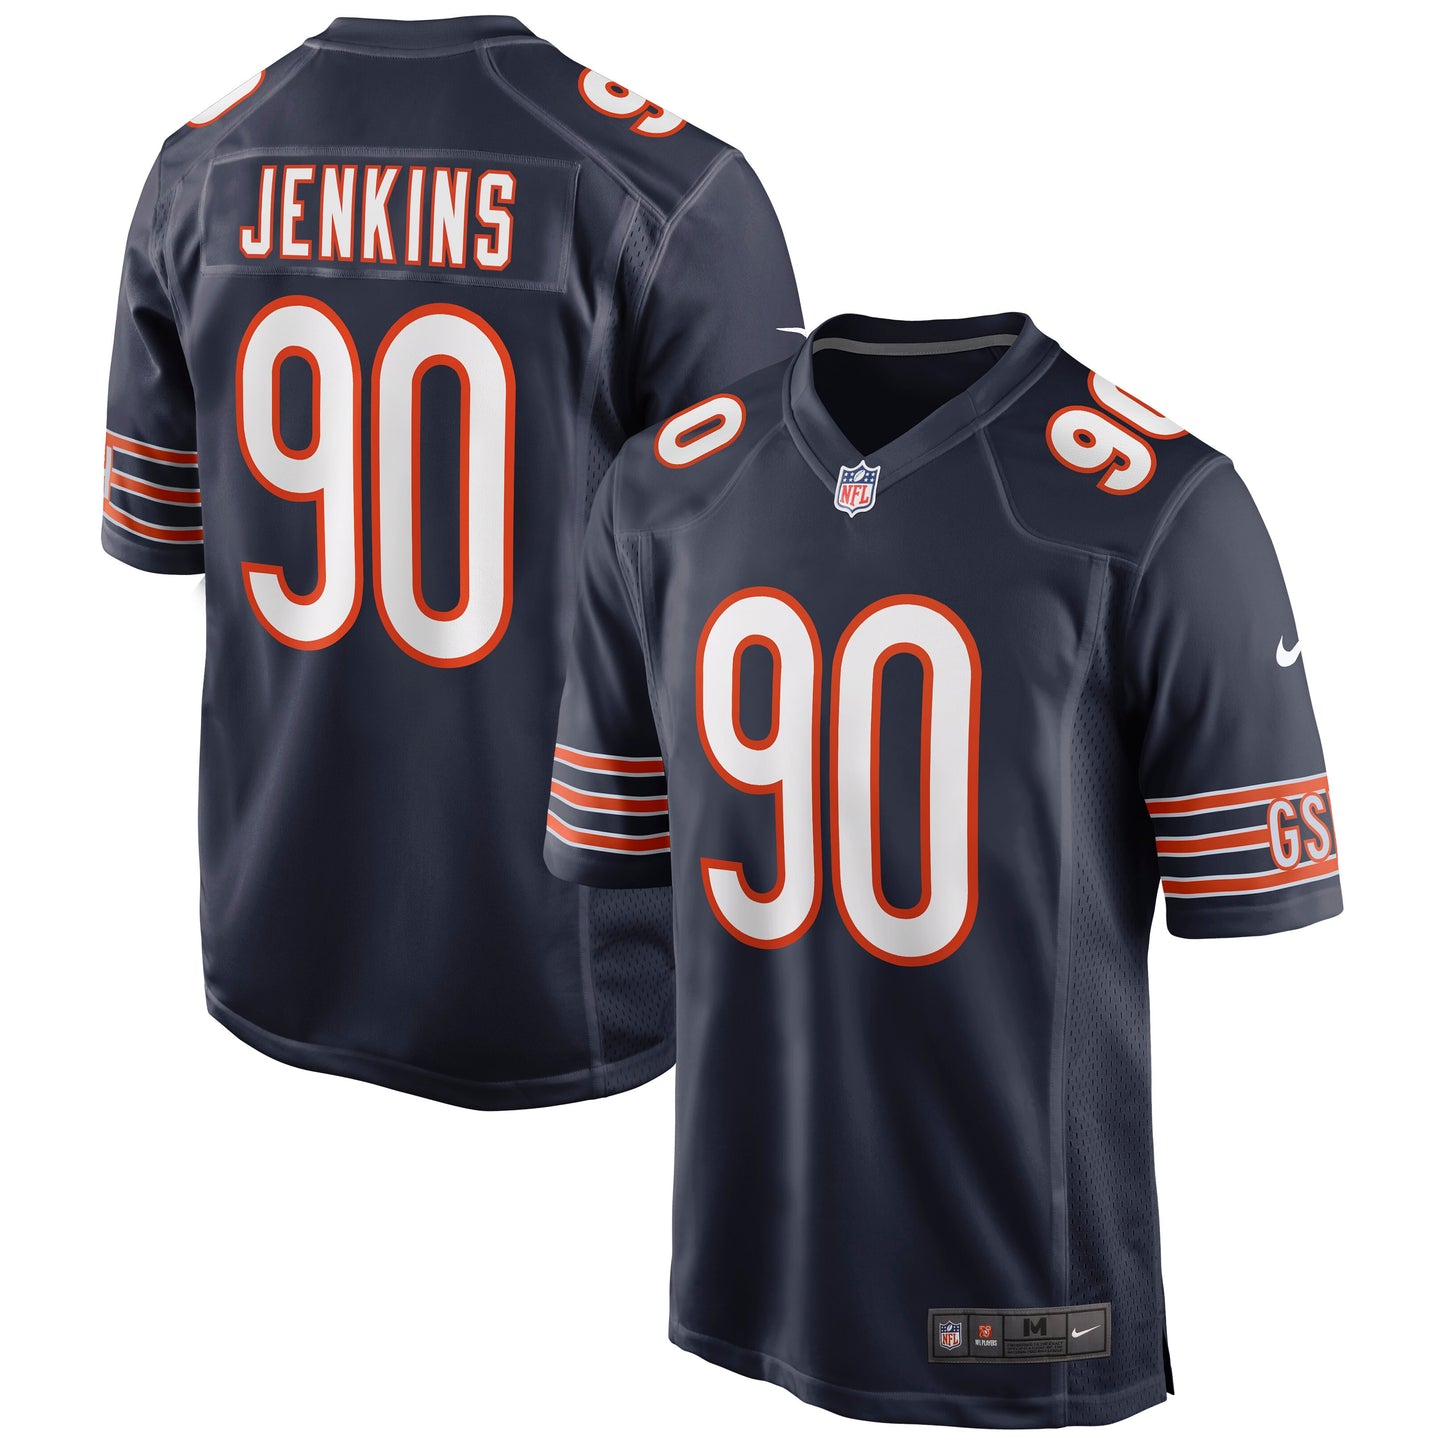 John Jenkins Chicago Bears Nike Game Jersey - Navy